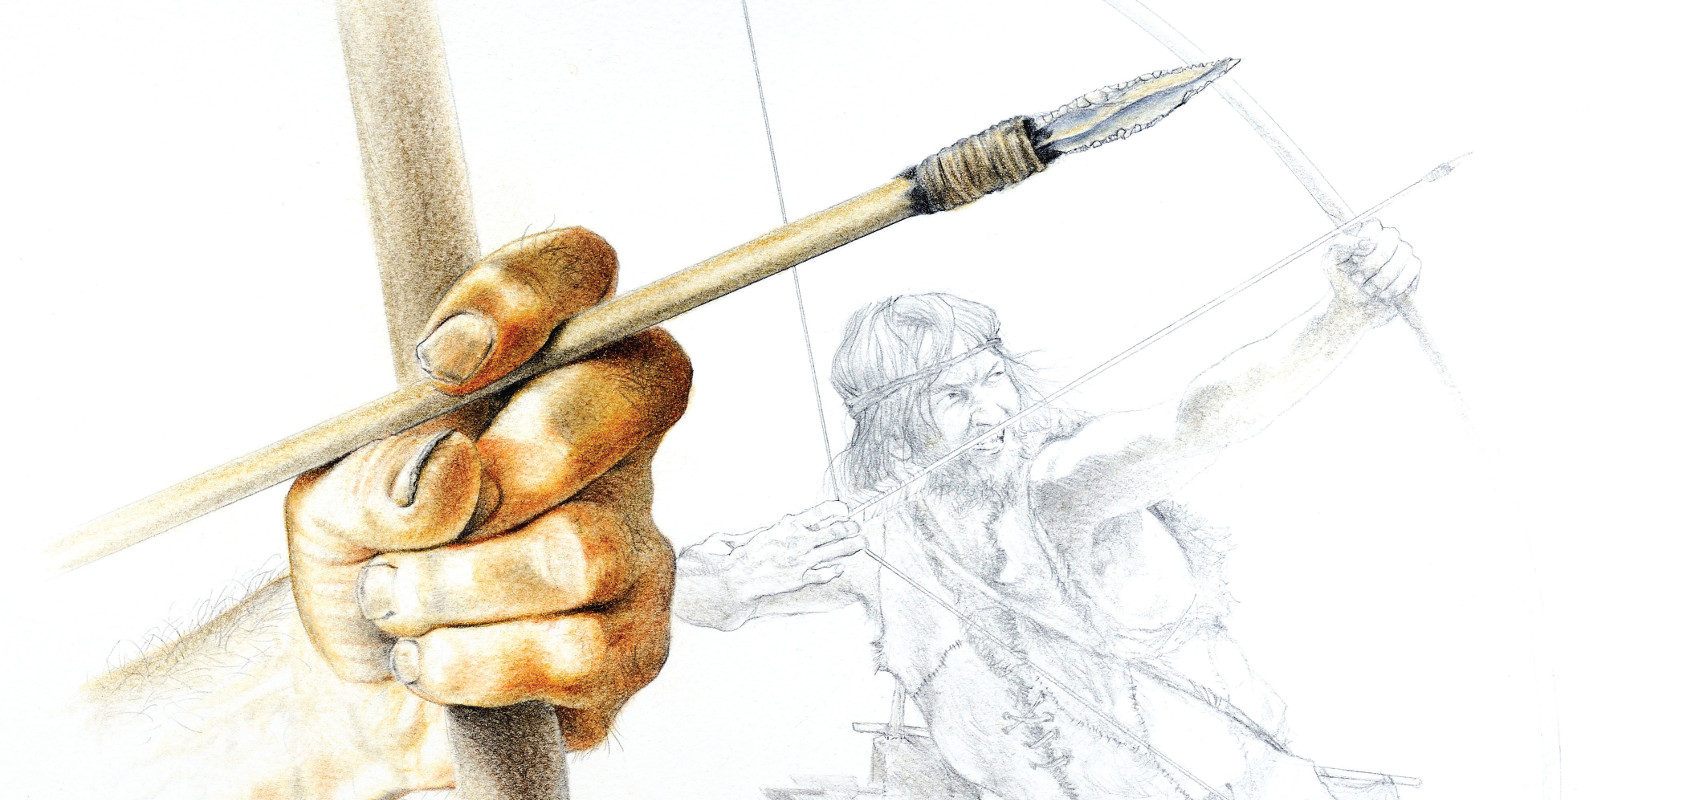 Pannello 2 - Foto 1: Disegno ricostruttivo di una freccia paleolitica armata di punta in selce | disegno di M. Cutrona (per gentile concessione del MUSE)